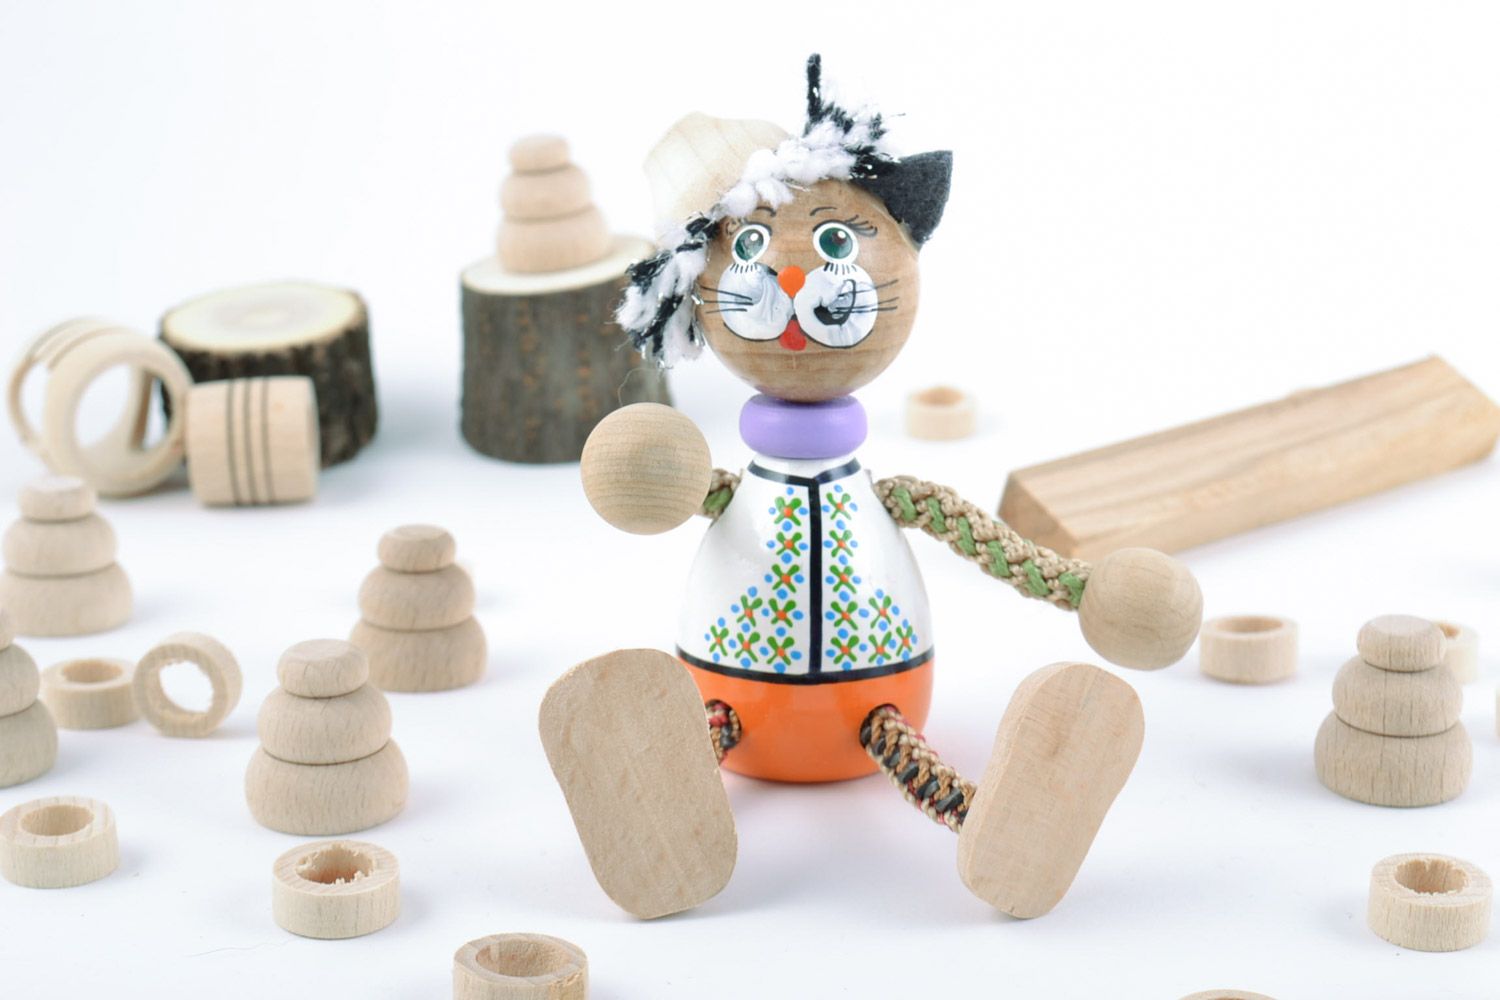 Jouet en bois original fait main peint figurine décorative pour enfant Chat photo 1